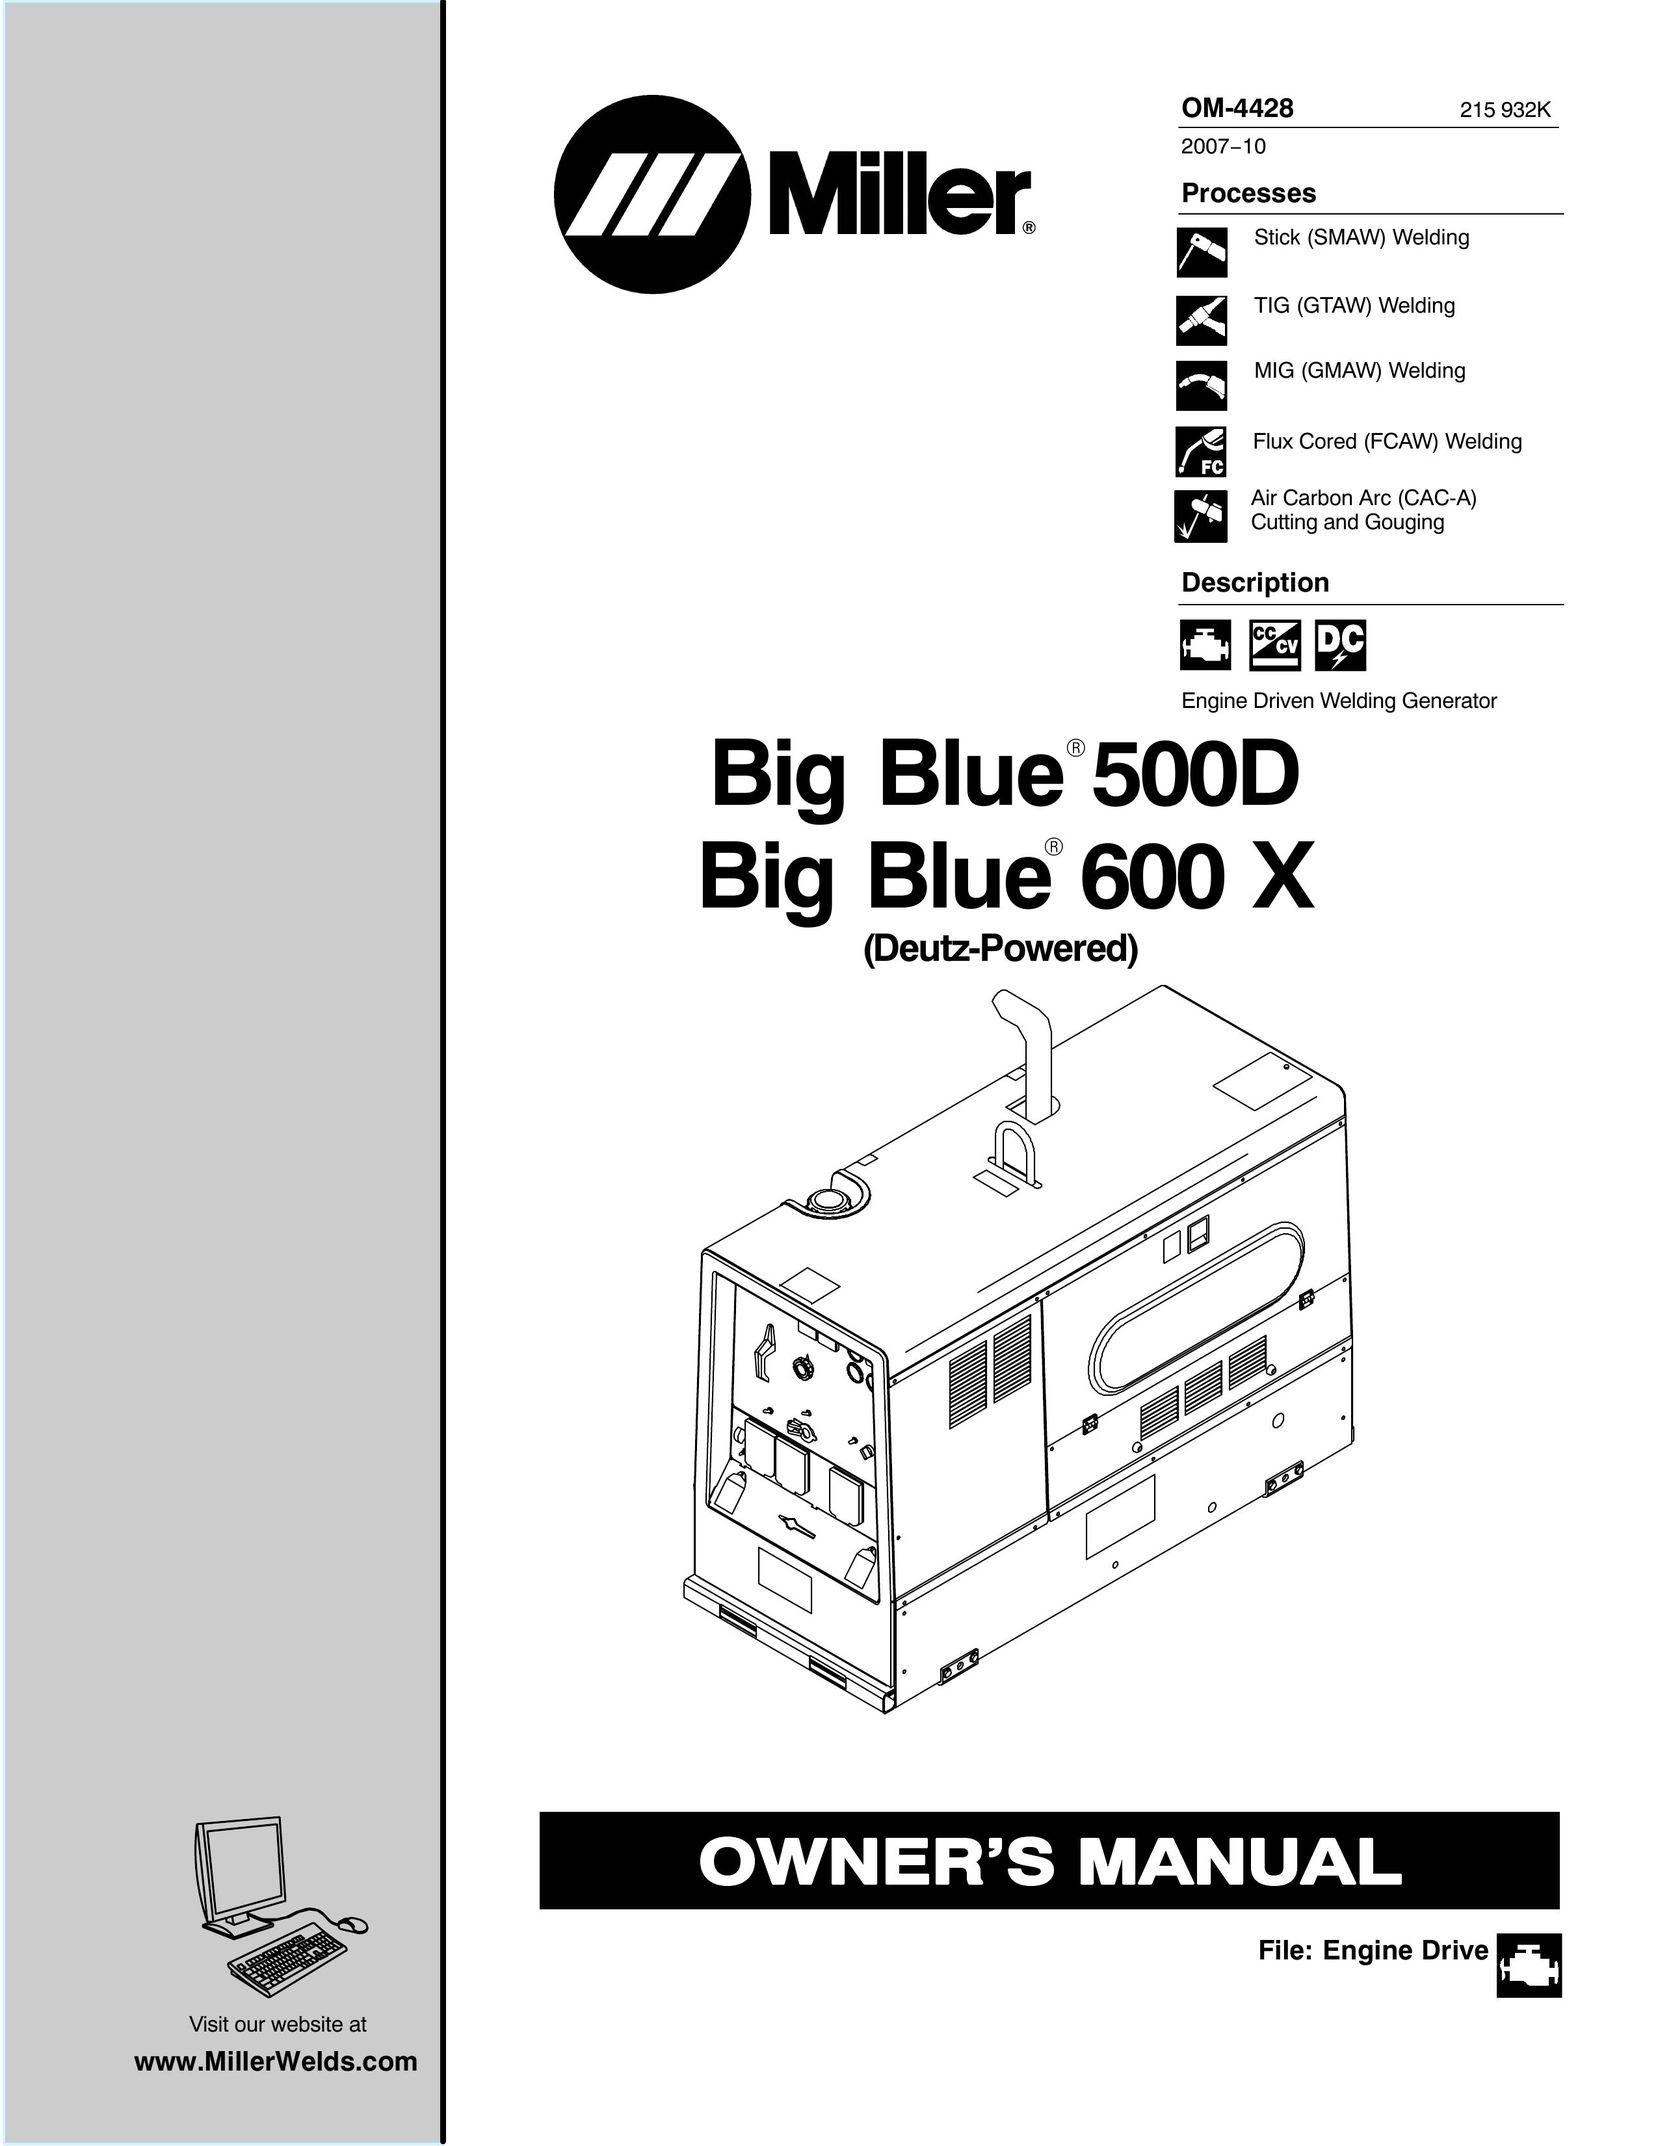 Miller Electric 600 X Welder User Manual